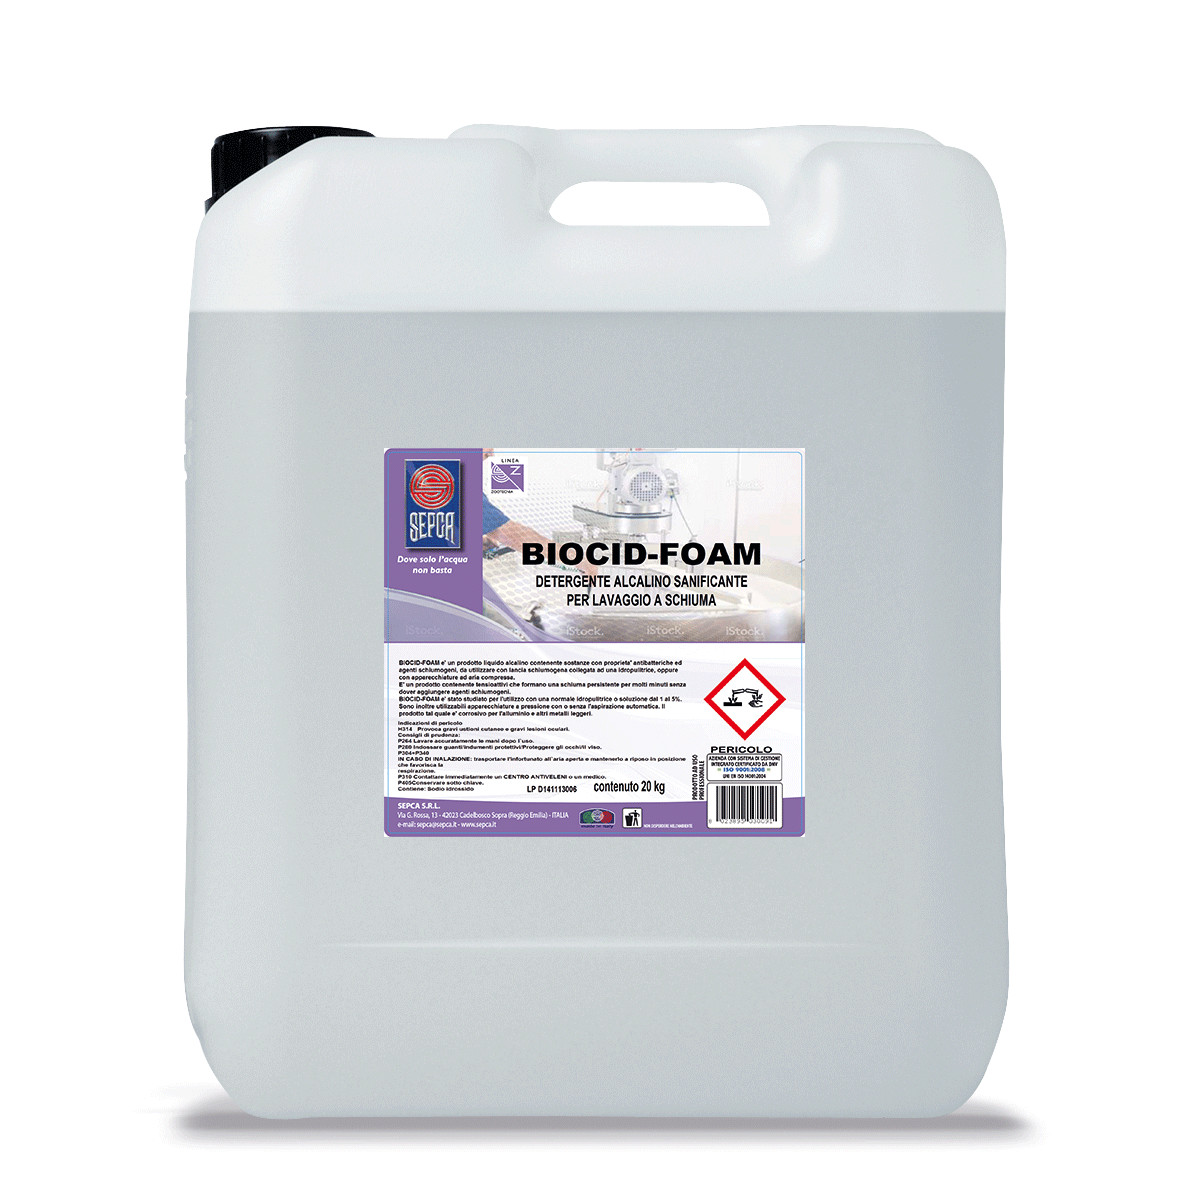 Biocid foam detergente alcalino sanificante